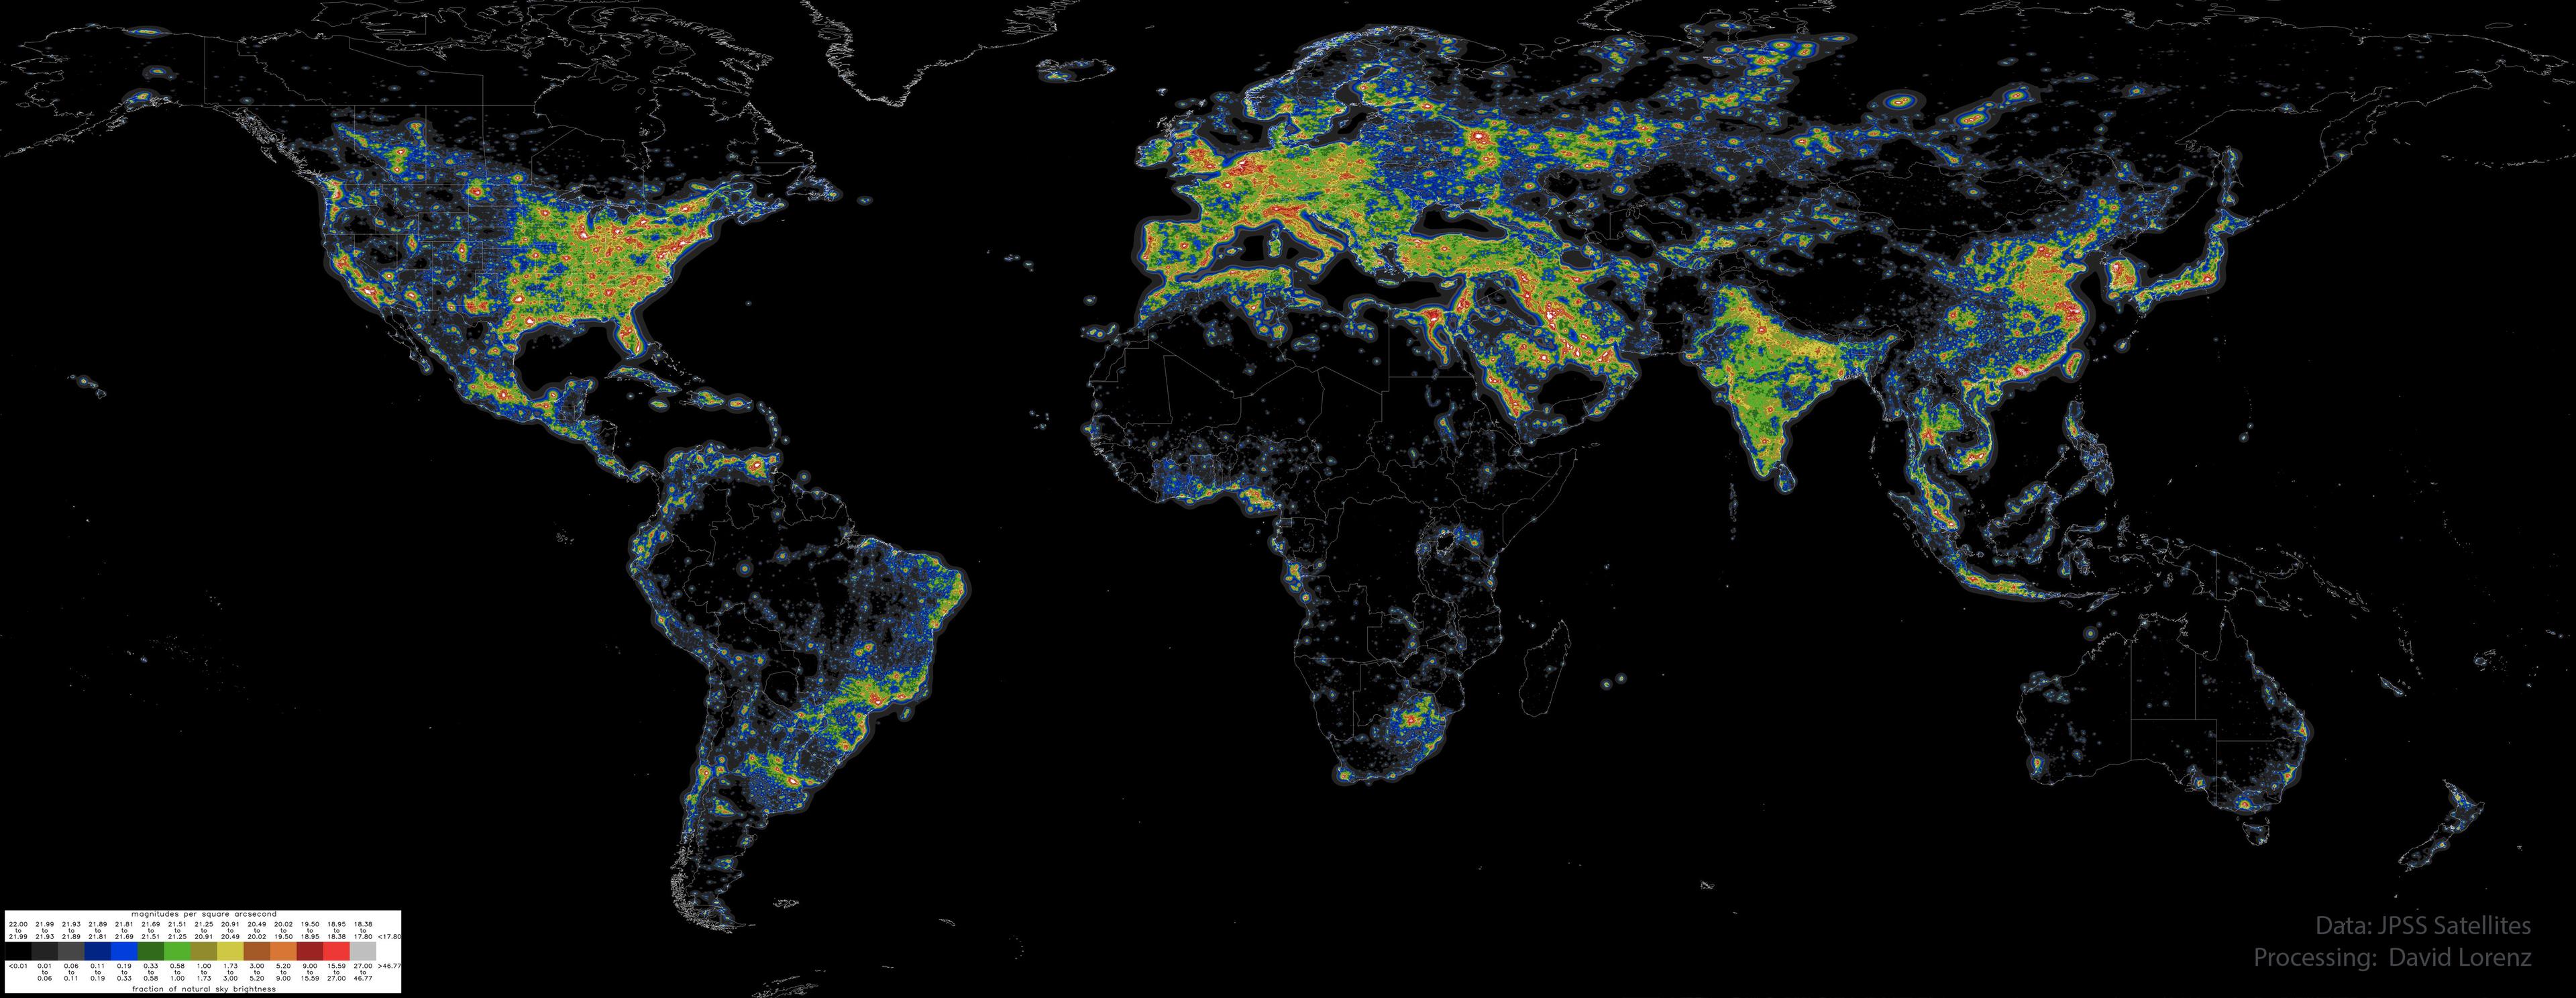 خريطةٌ مُسطّحة للأرض مُنارةٌ فقط وفقاً لدرجة سطوع سماء الليل.